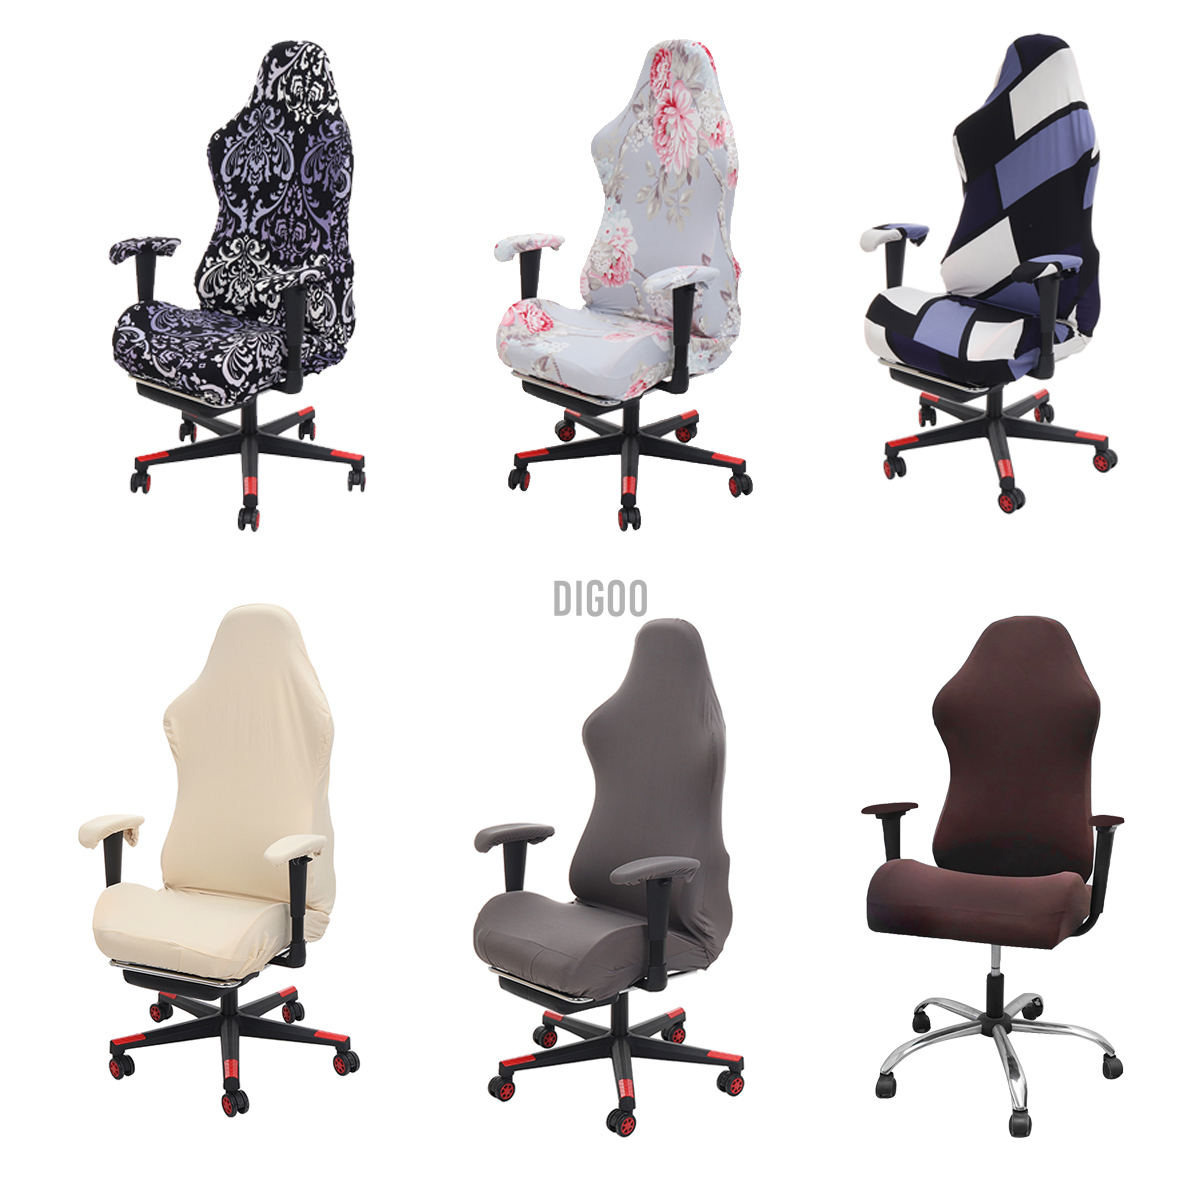 Tấm phủ bảo vệ cho ghế xoay văn phòng/ghế ngồi máy tính/ghế chơi game/ghế bành